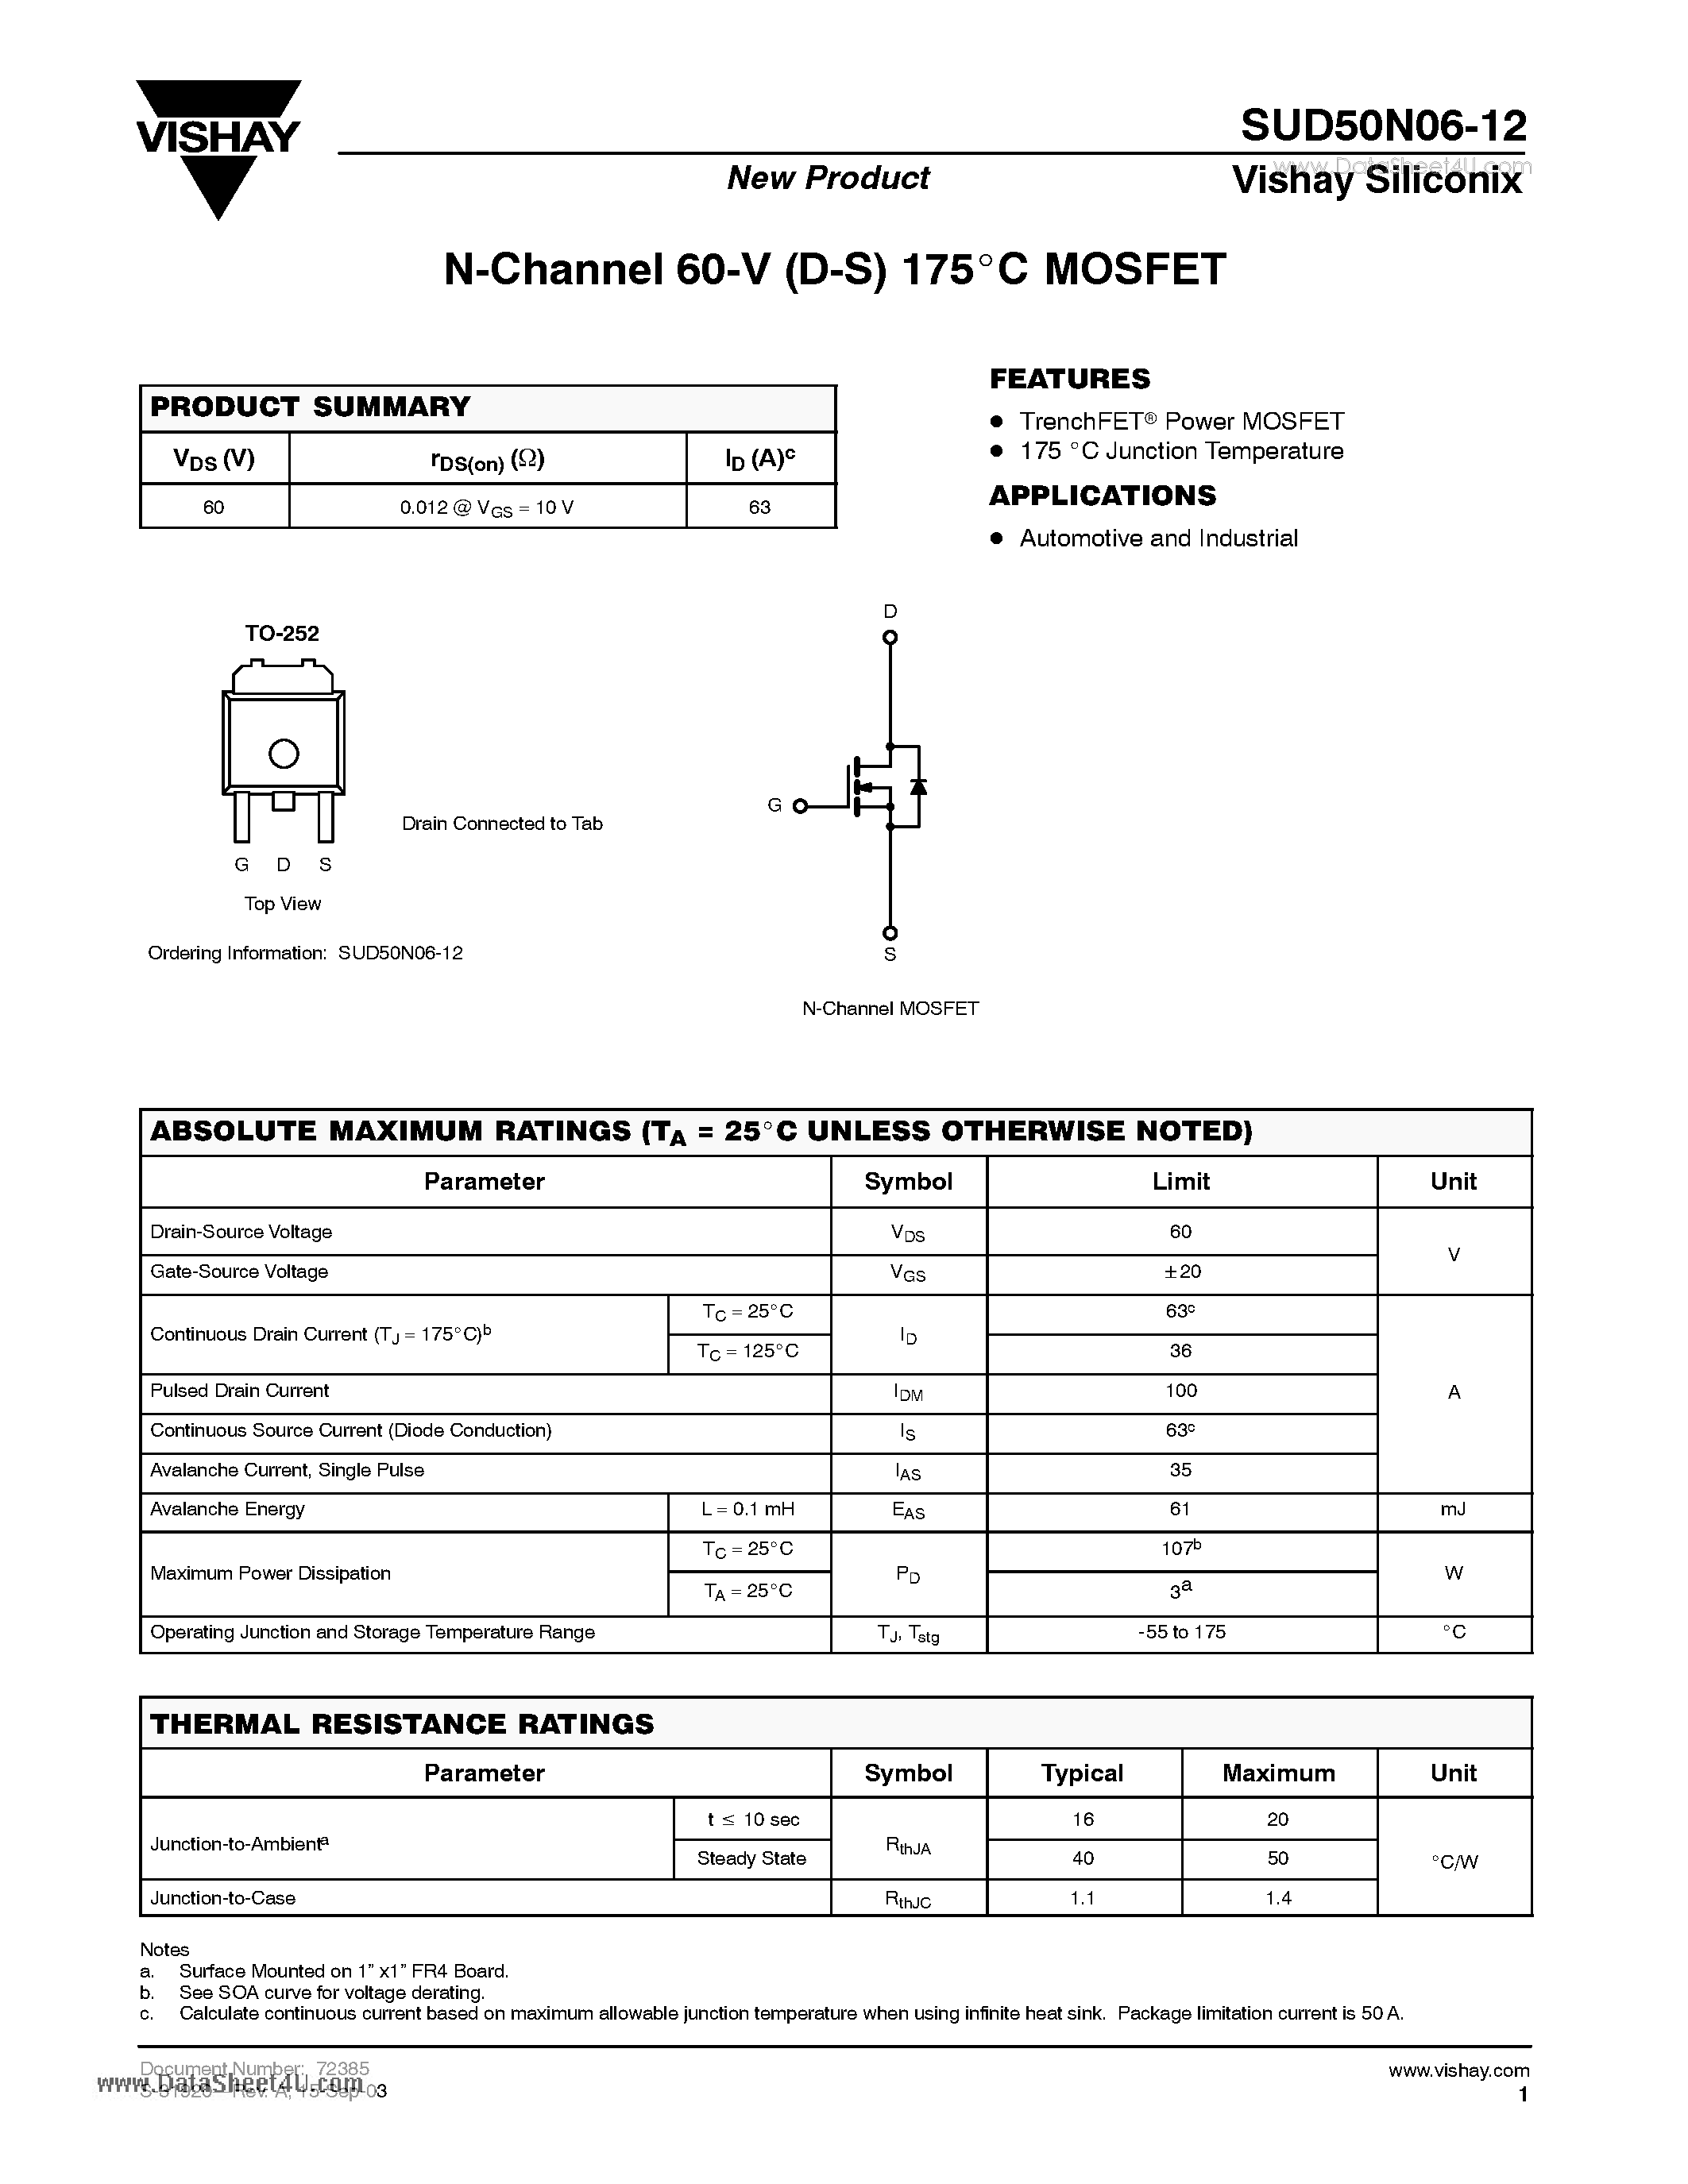 Даташит SUD50N06-12 - N-Channel 60-V (D-S) 175 C MOSFET страница 1